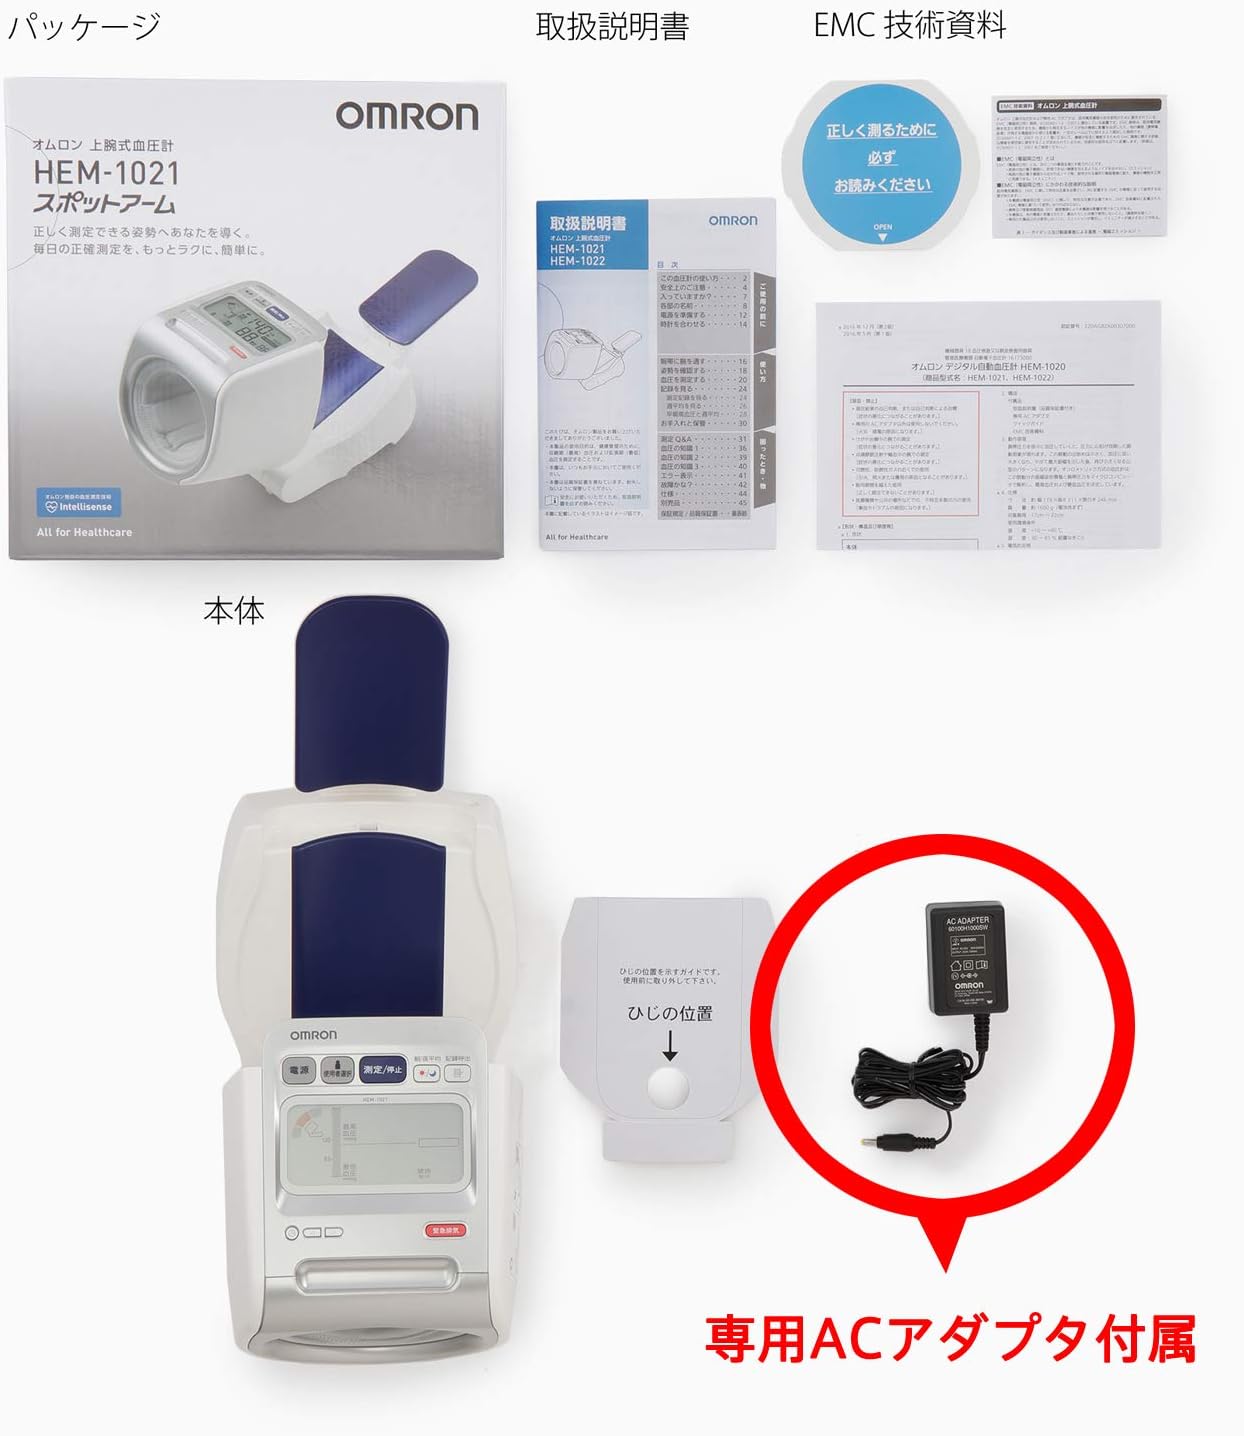 オムロンデジタル自動血圧計スポットアーム太腕対応OMRON